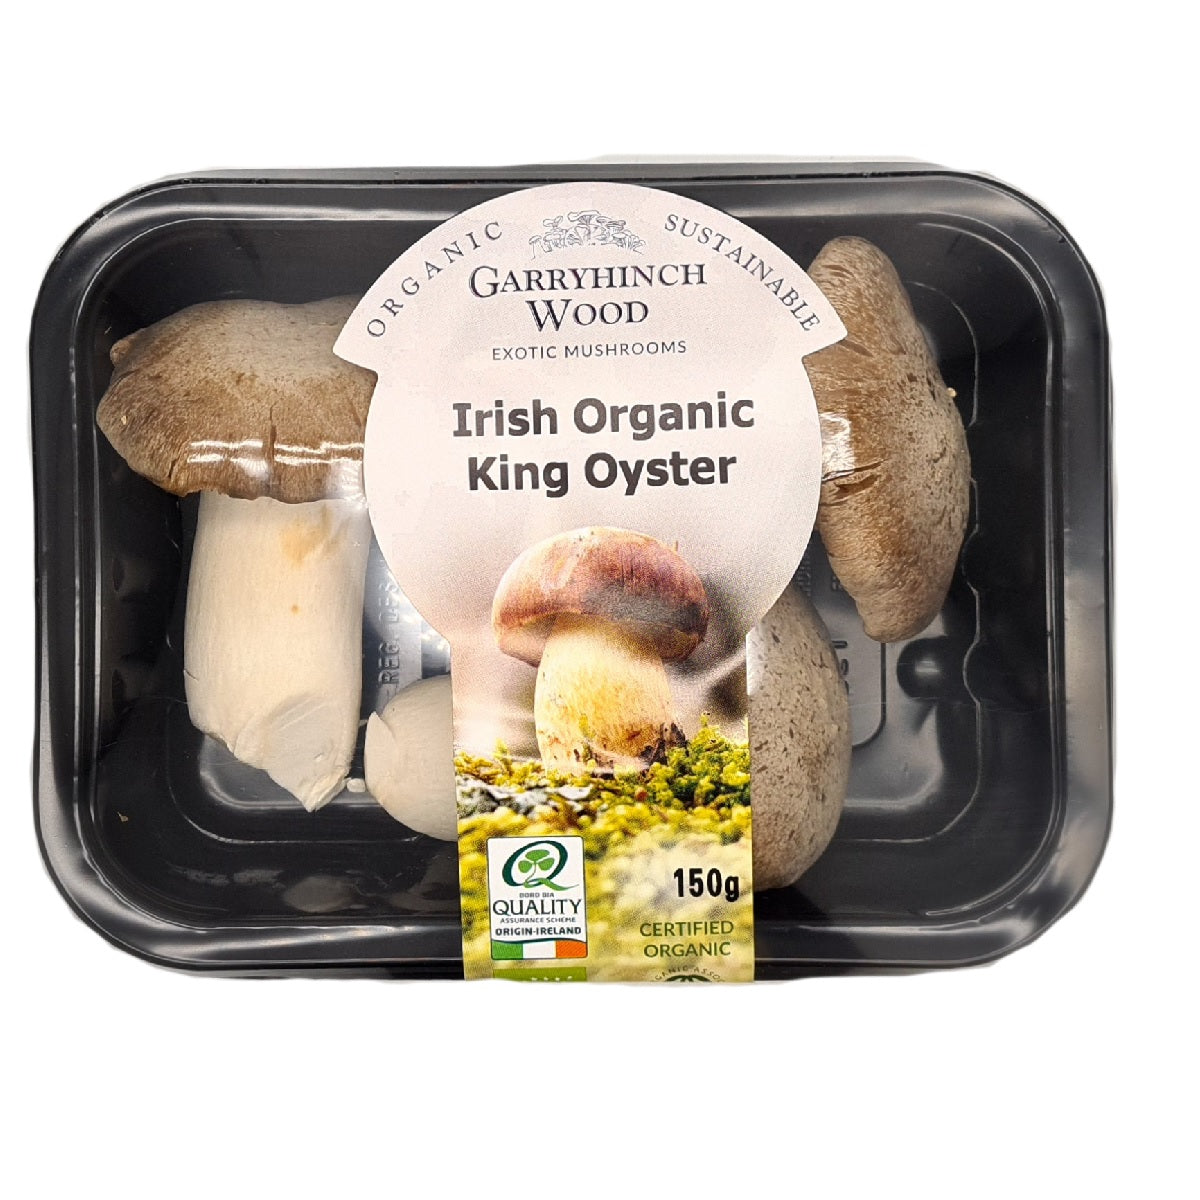 Garryhinch Wood Exotic Mushrooms Irish Organic King Oyster 150g